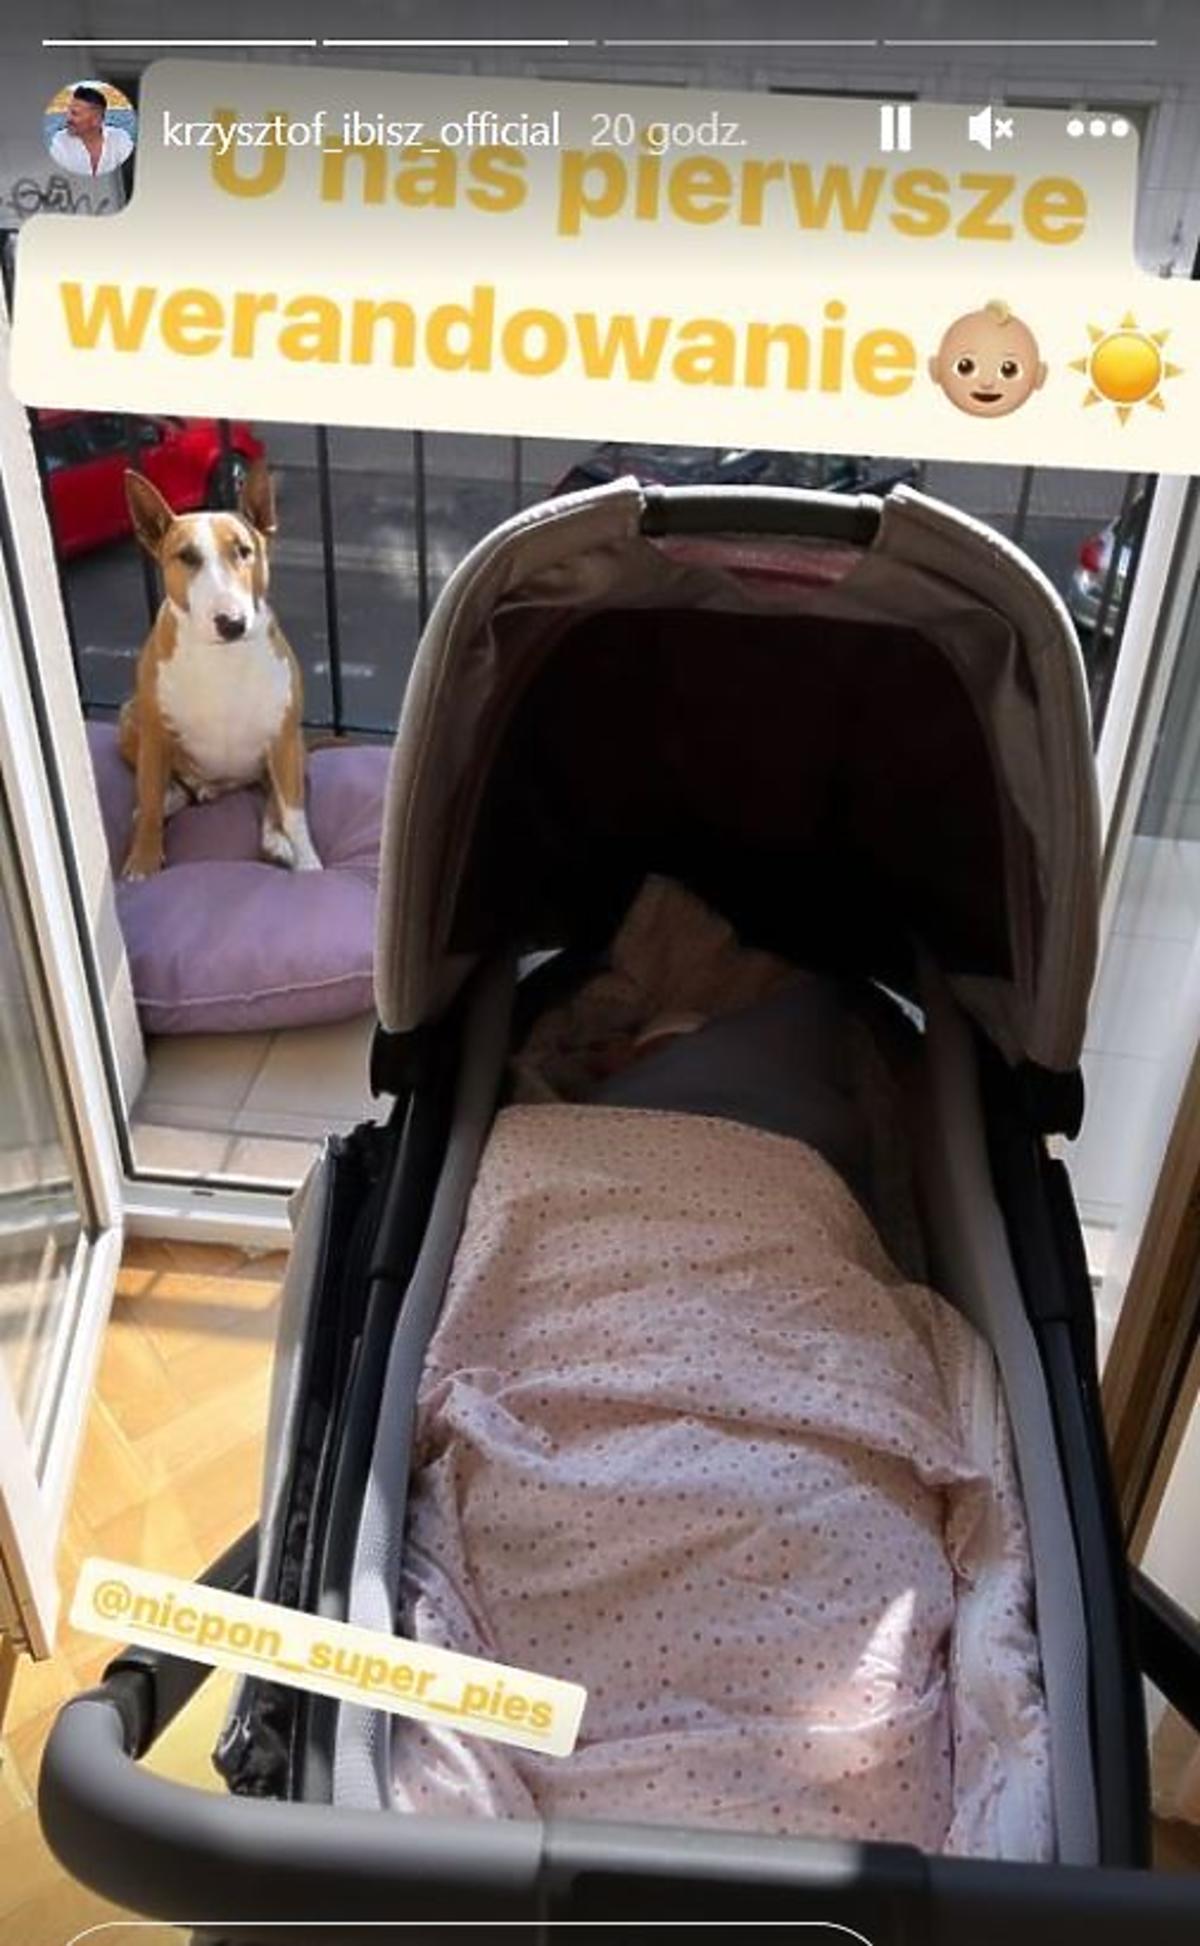 Krzysztof Ibisz pokazał czym powozi się jego najmłodszy syn. Fotografia z Instagrama na którym jest wózek dla dziecka Ibisza 